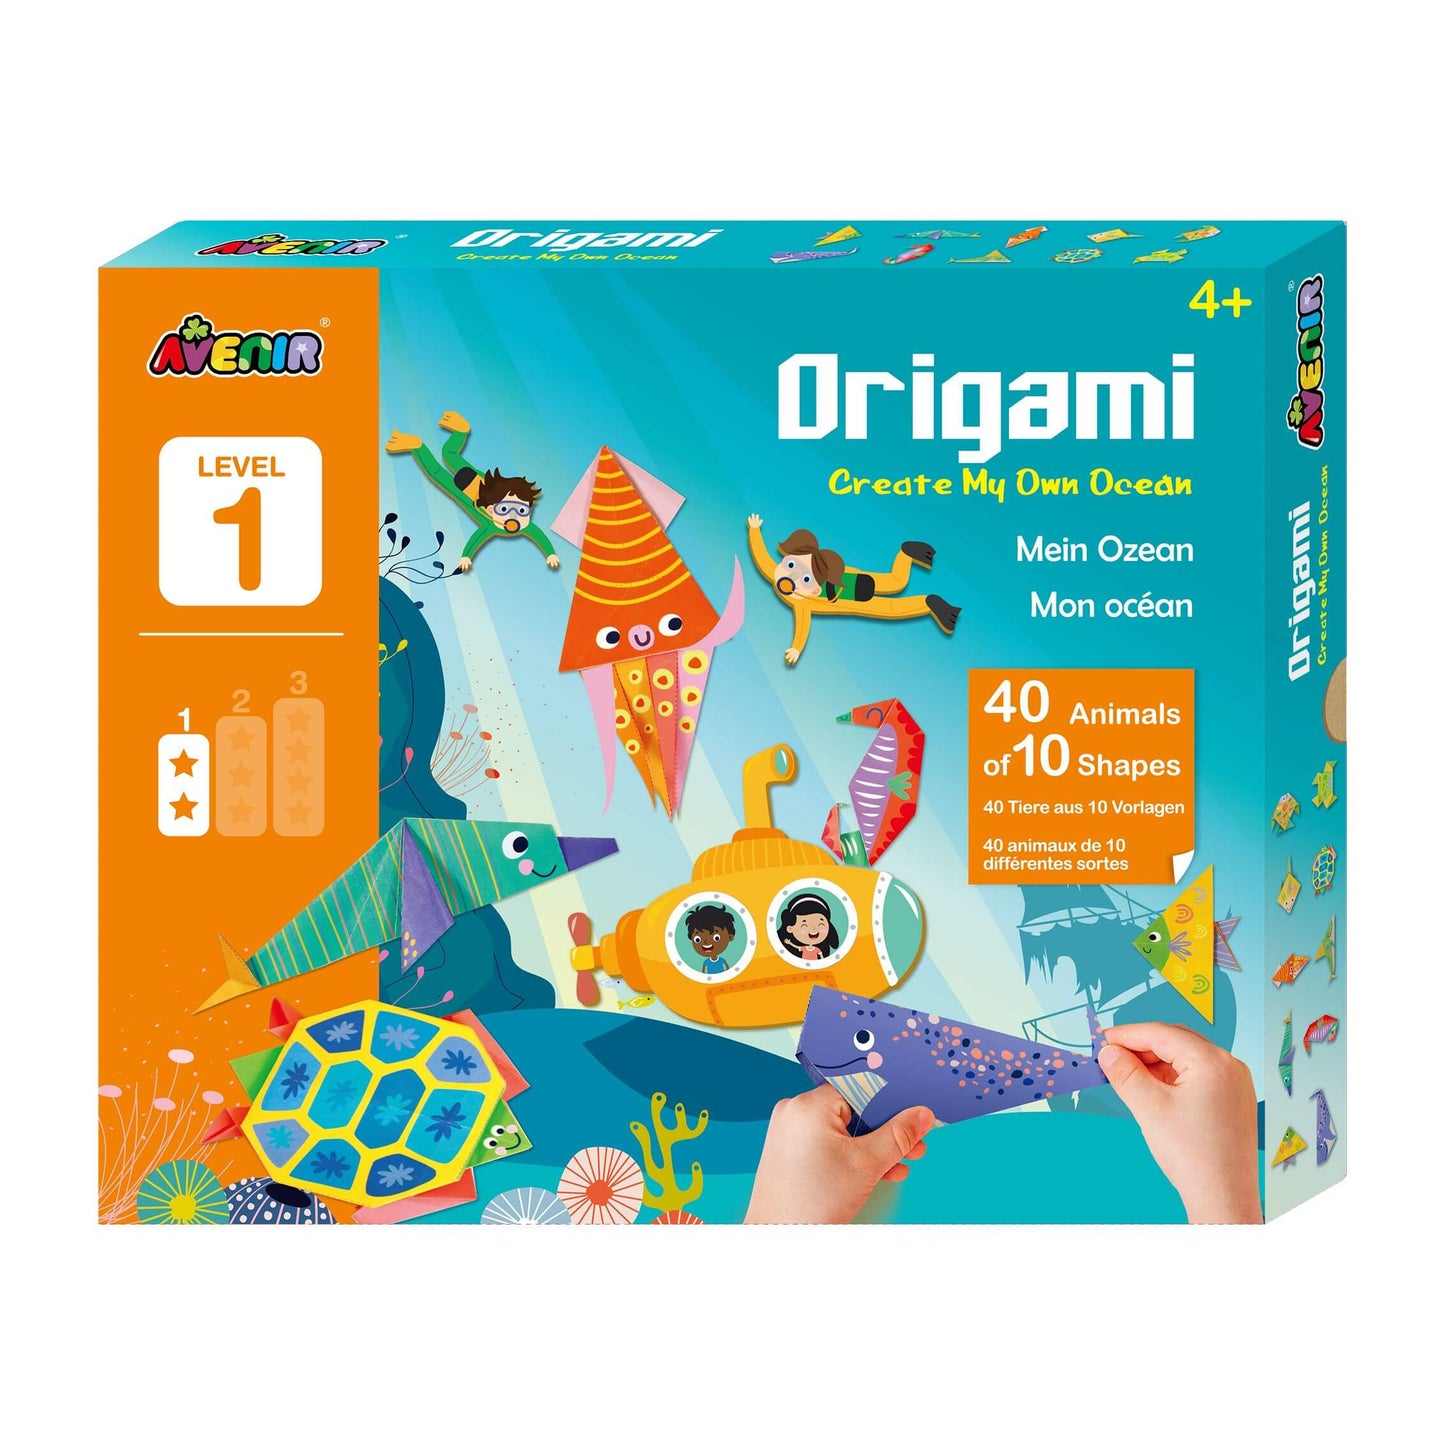 Origami Create My Own Ocean